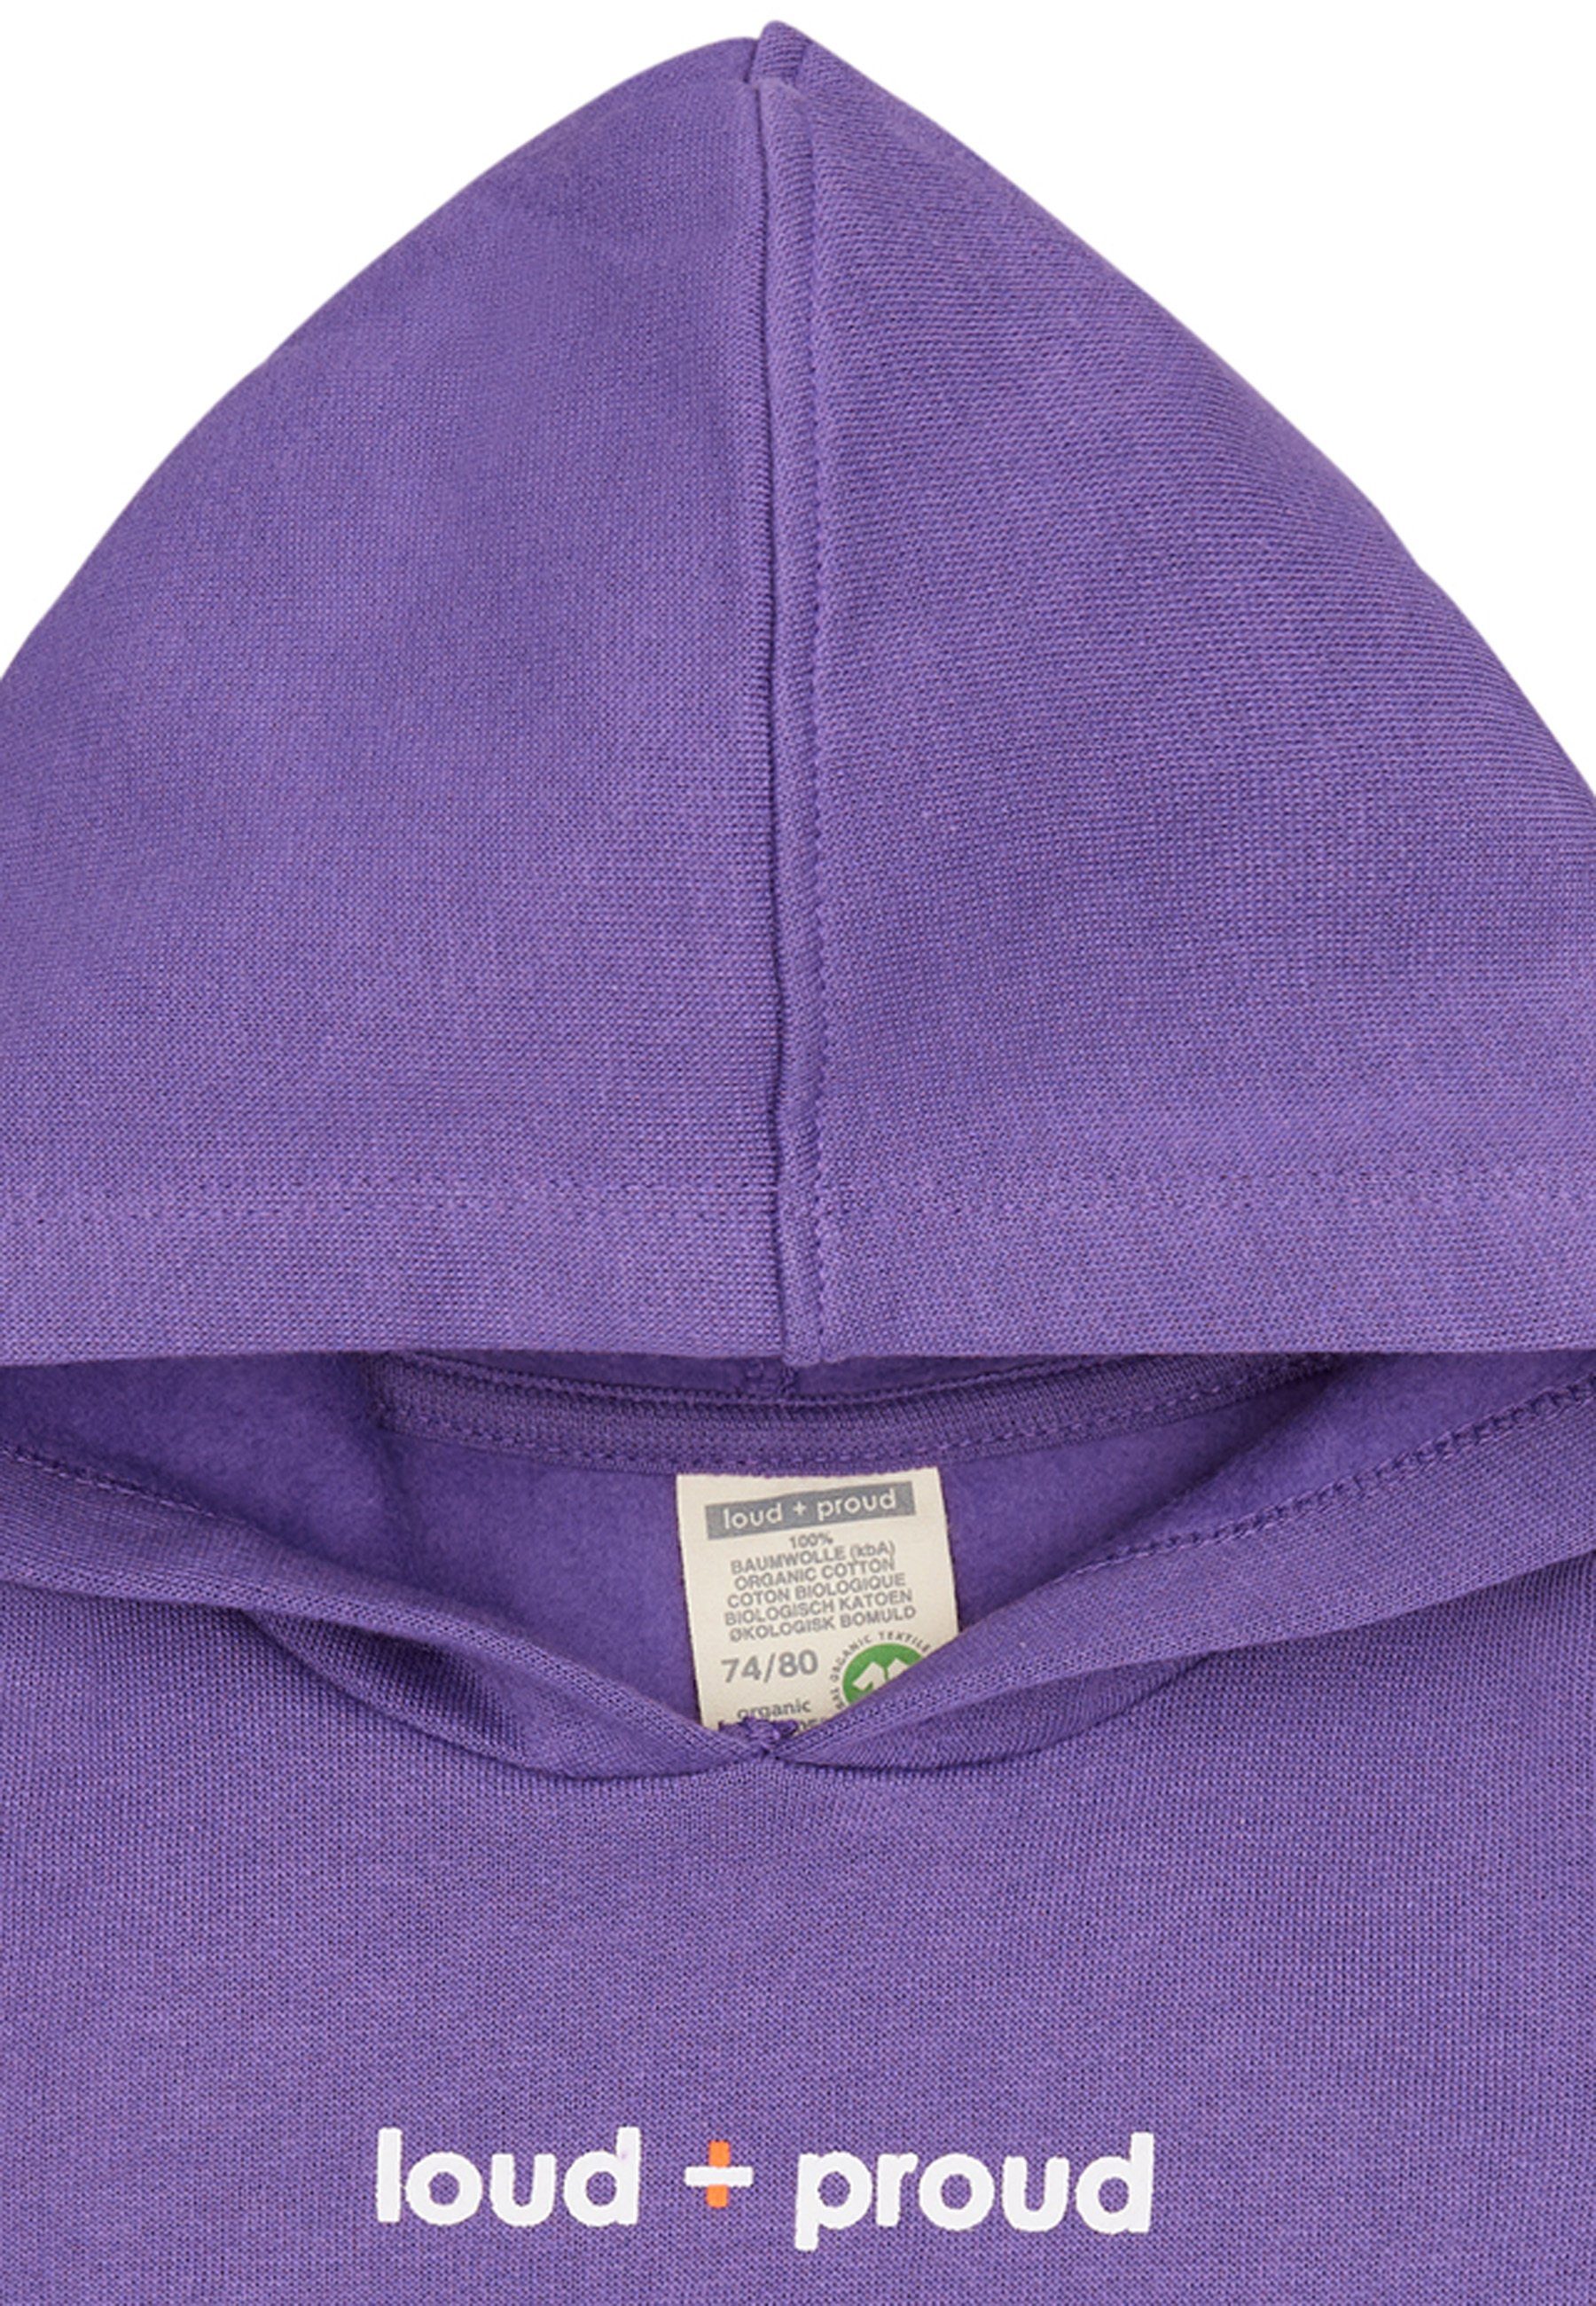 violet GOTS loud + zertifizierte proud Hoodie Bio-Baumwolle